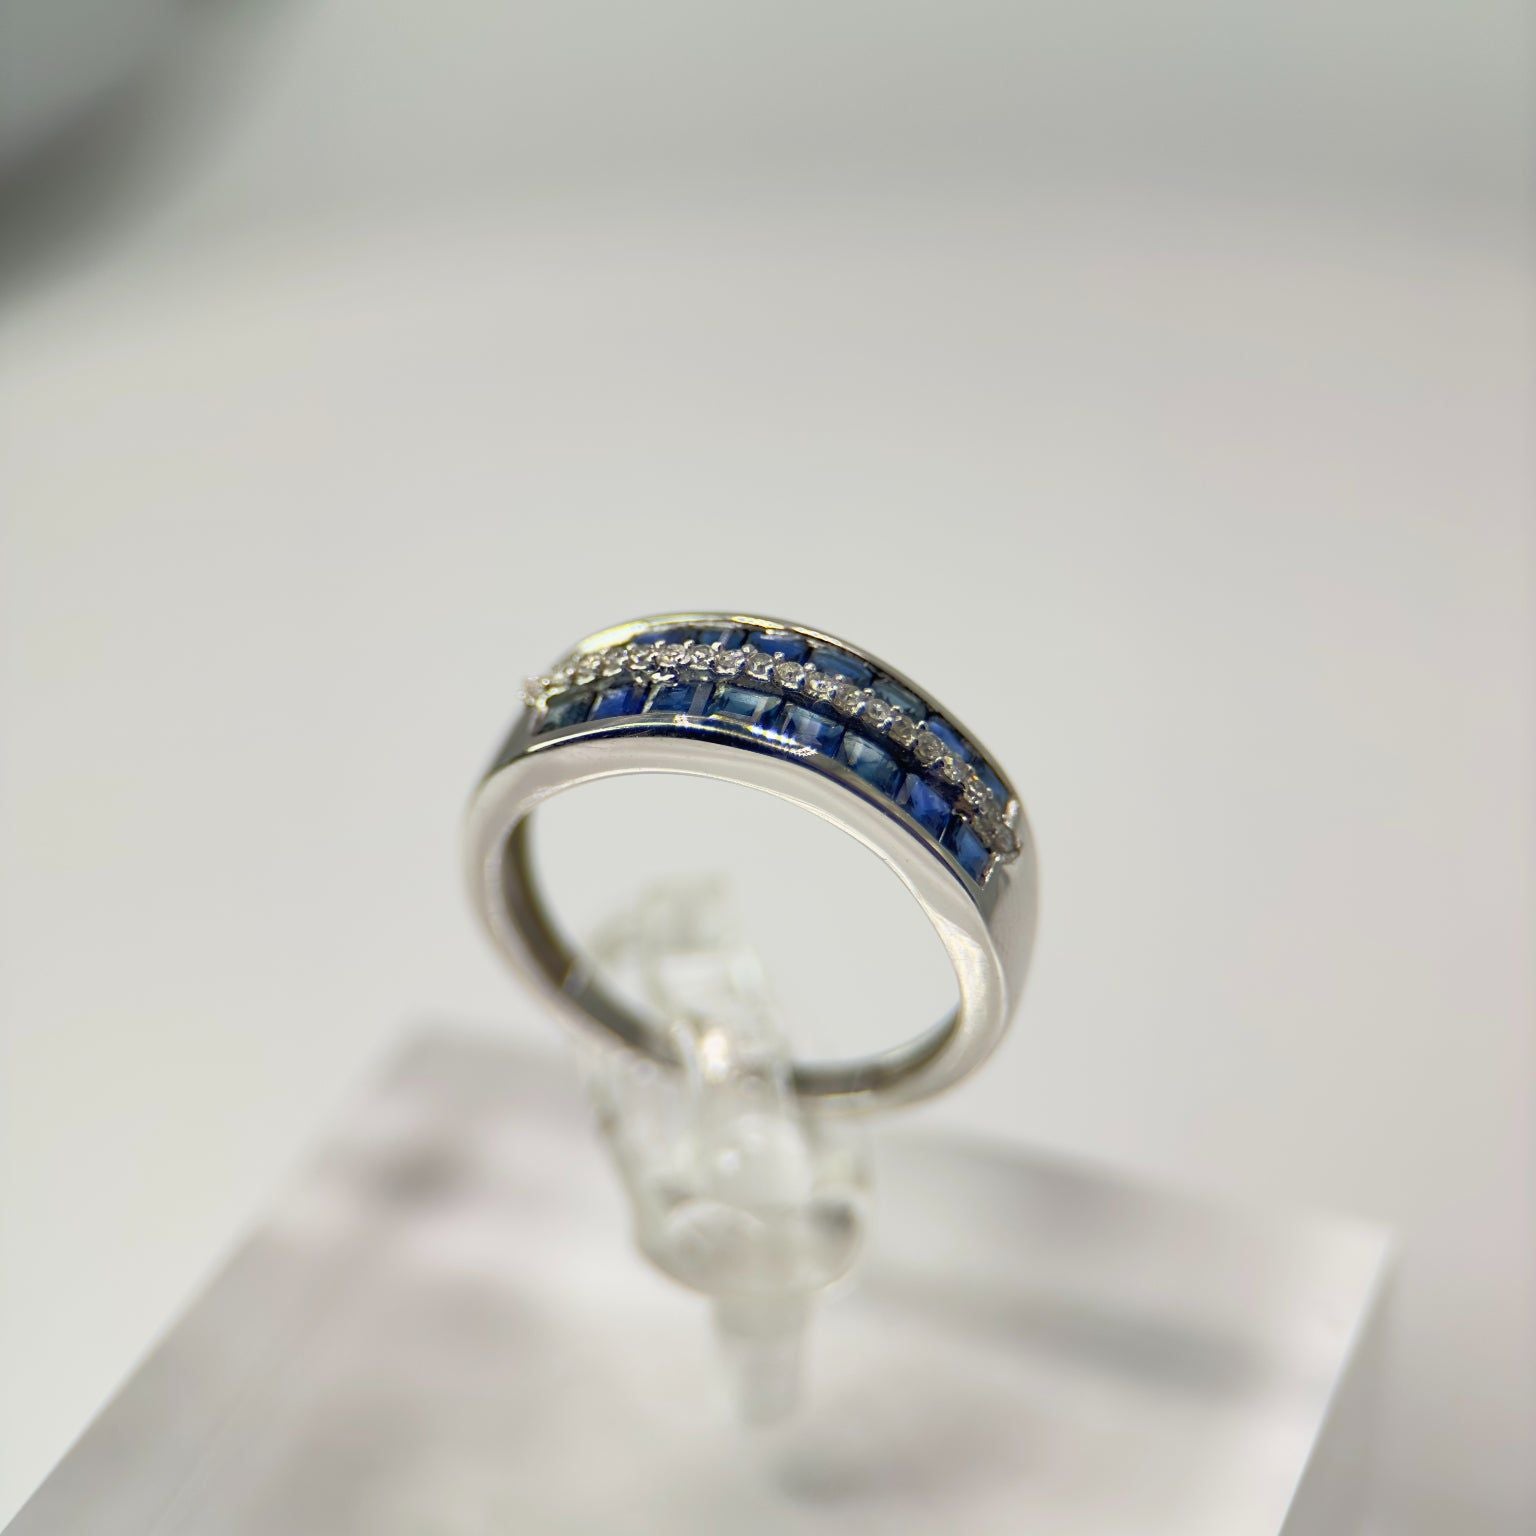 DR1443 - Oro blanco de 14 quilates - Redondo (pavé) - Diamante - Anillos de diamantes y piedras preciosas para mujer